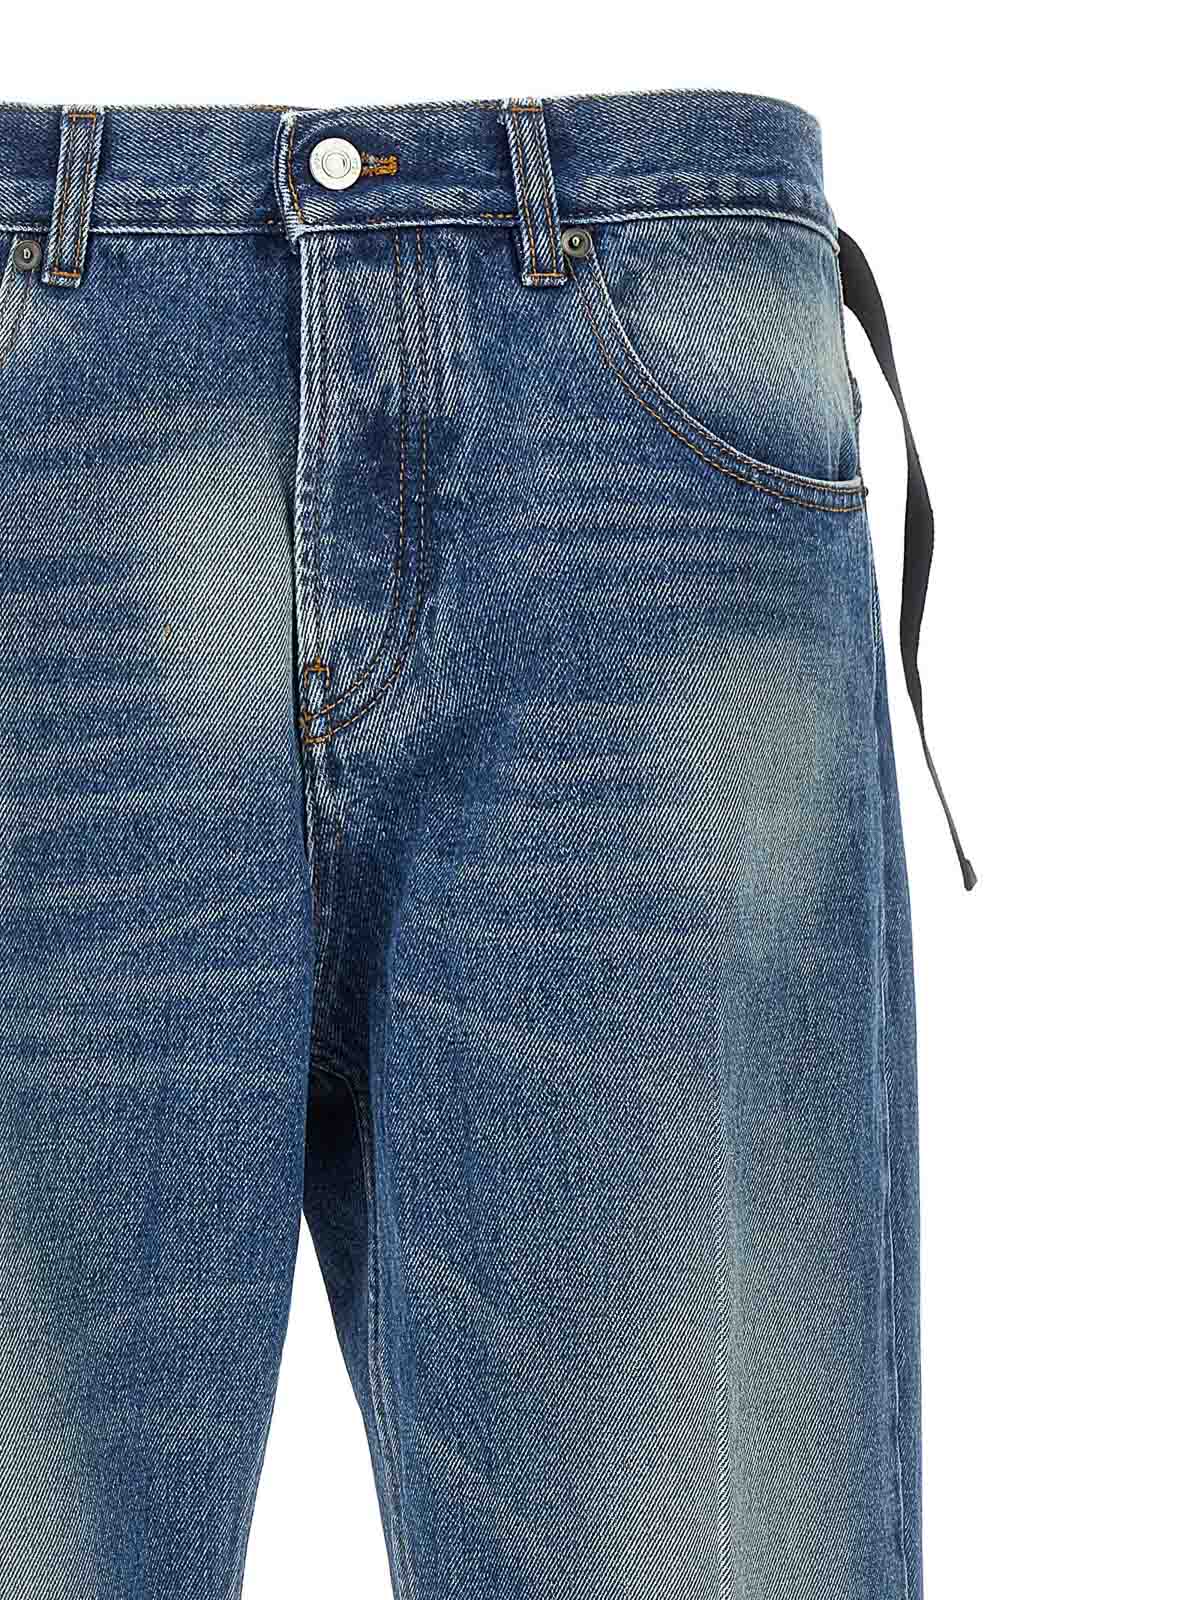 Shop N°21 Jeans Boot-cut - Azul